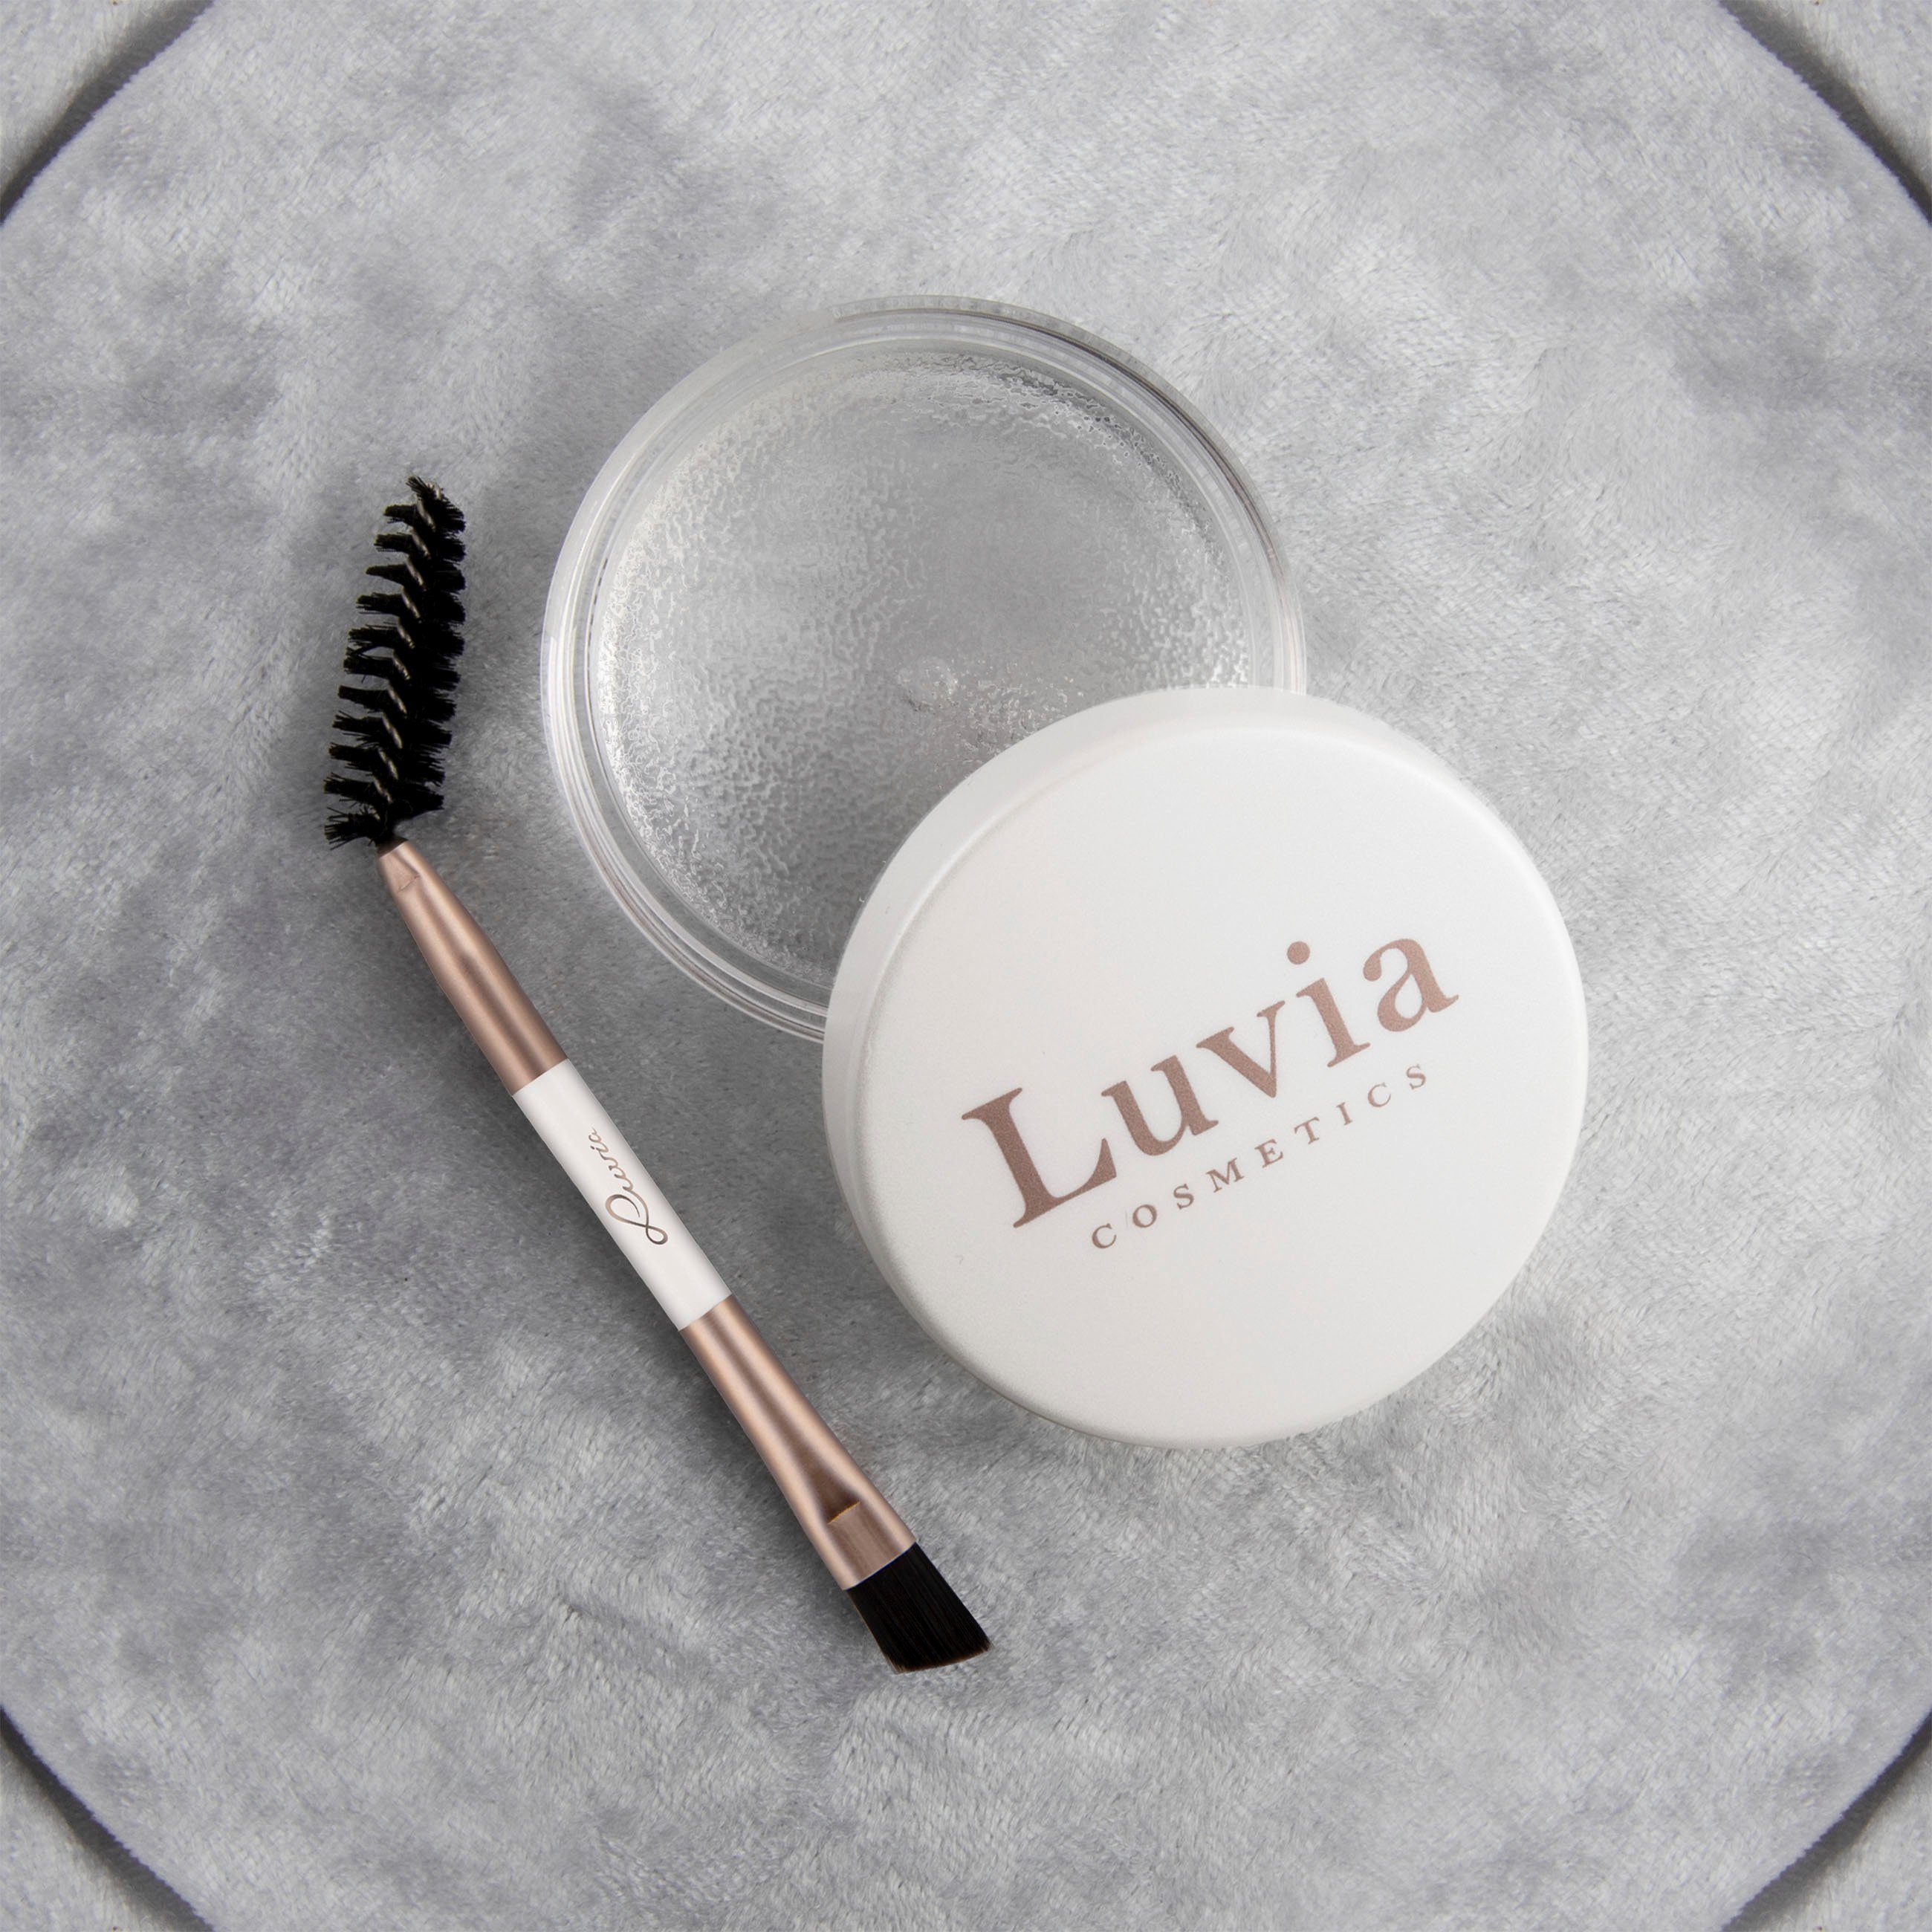 Luvia Gel Styling Lidschatten-Palette Cosmetics Brow